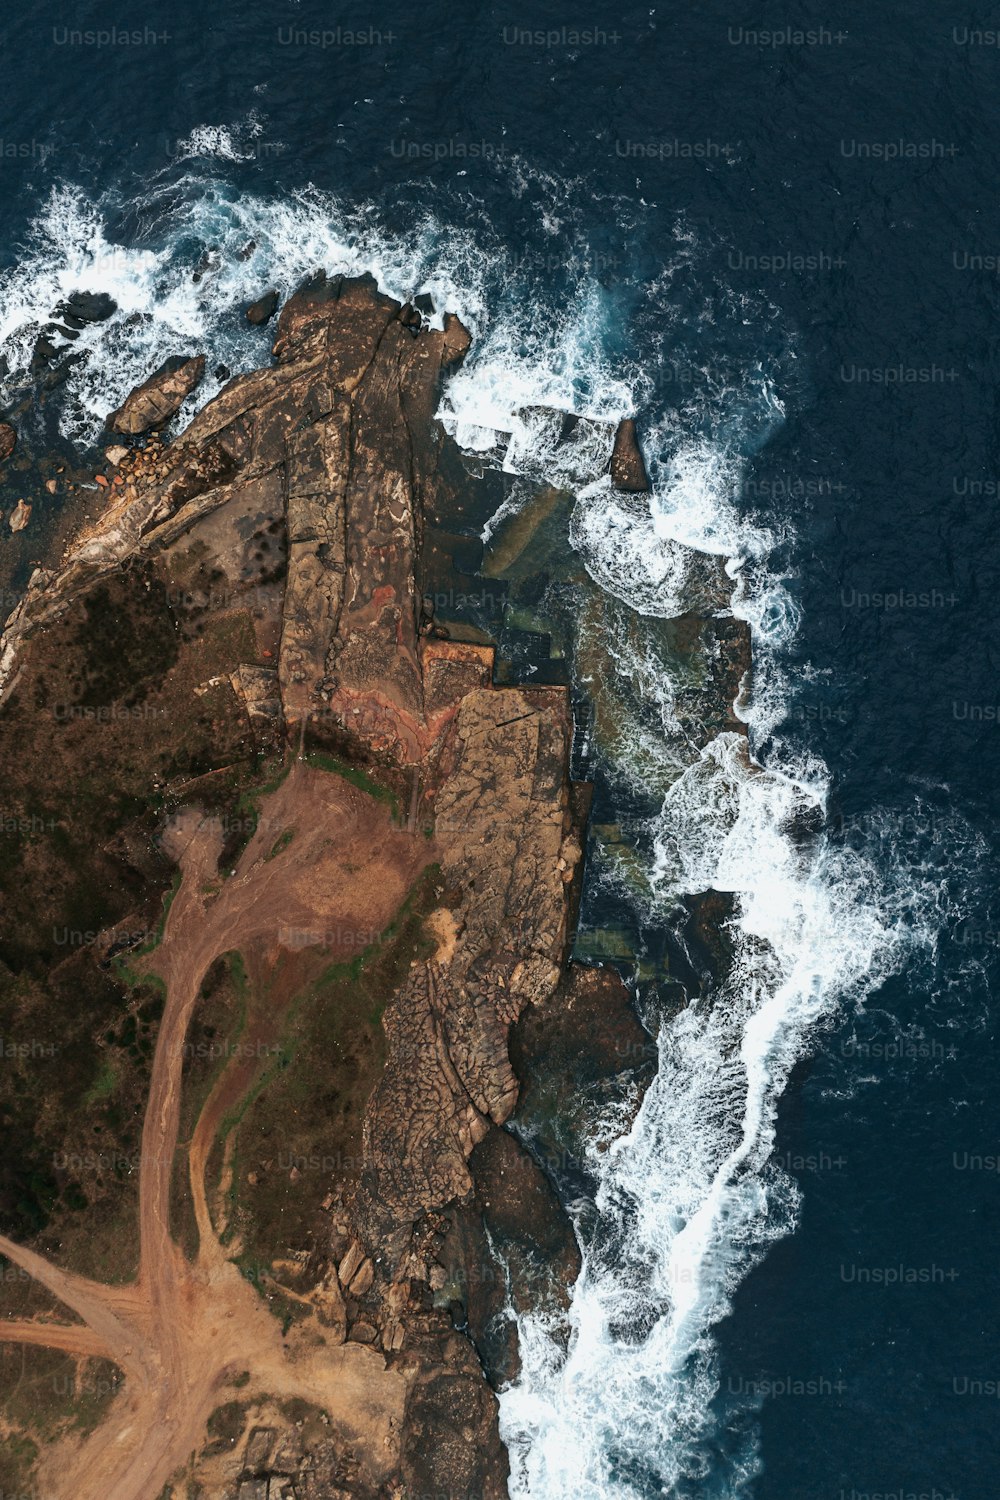 Una vista aérea de una isla en medio del océano